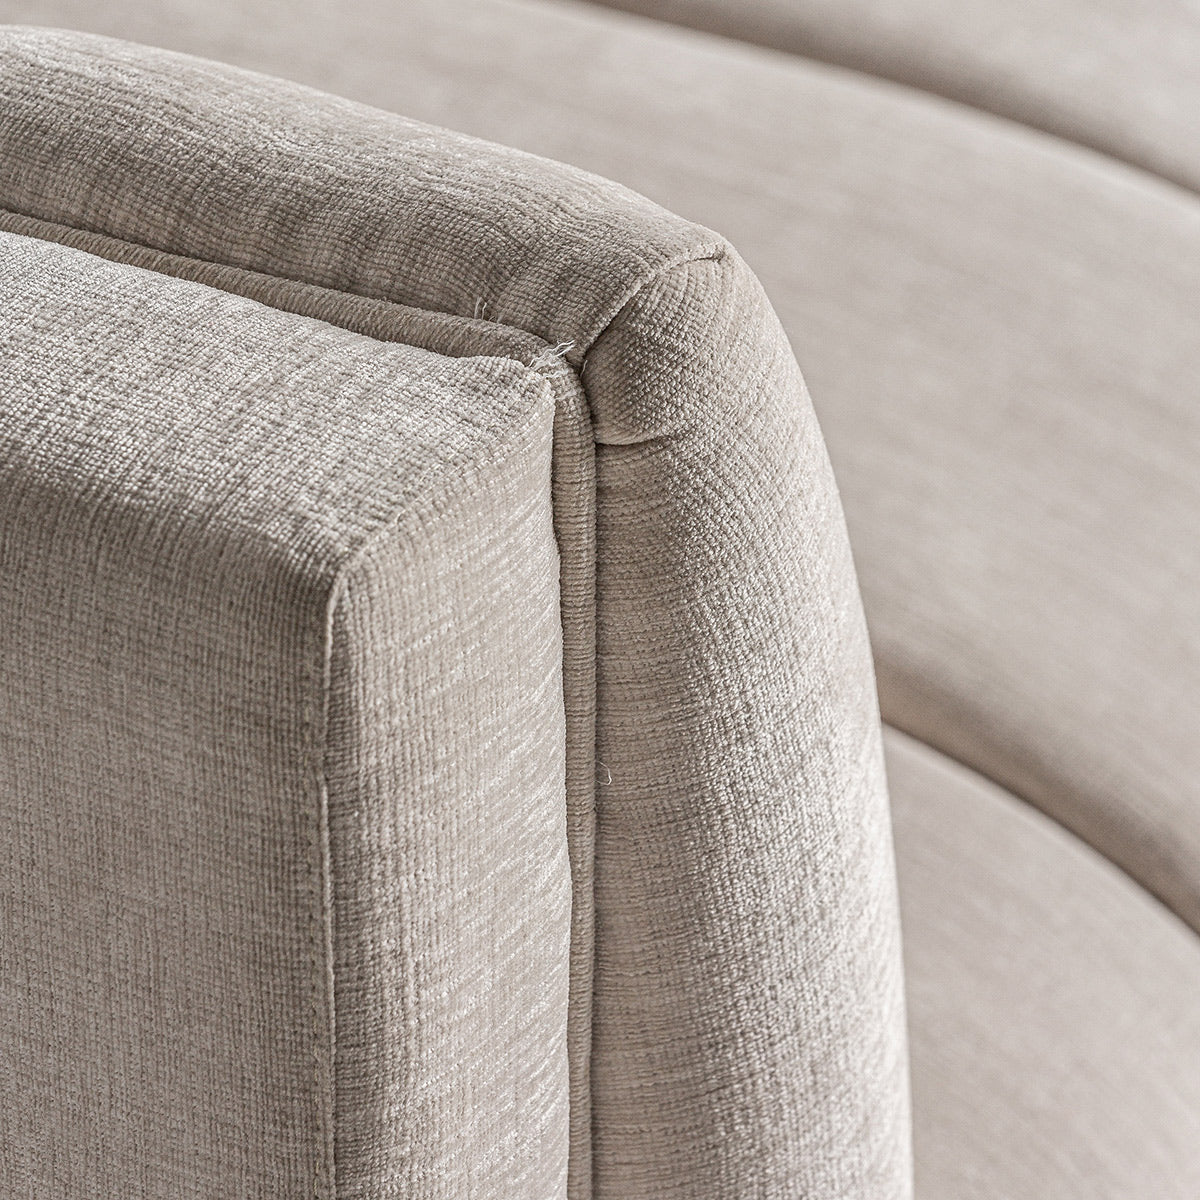 A kortárs stílusú, törtfehér színű kanapé karfa részlete.